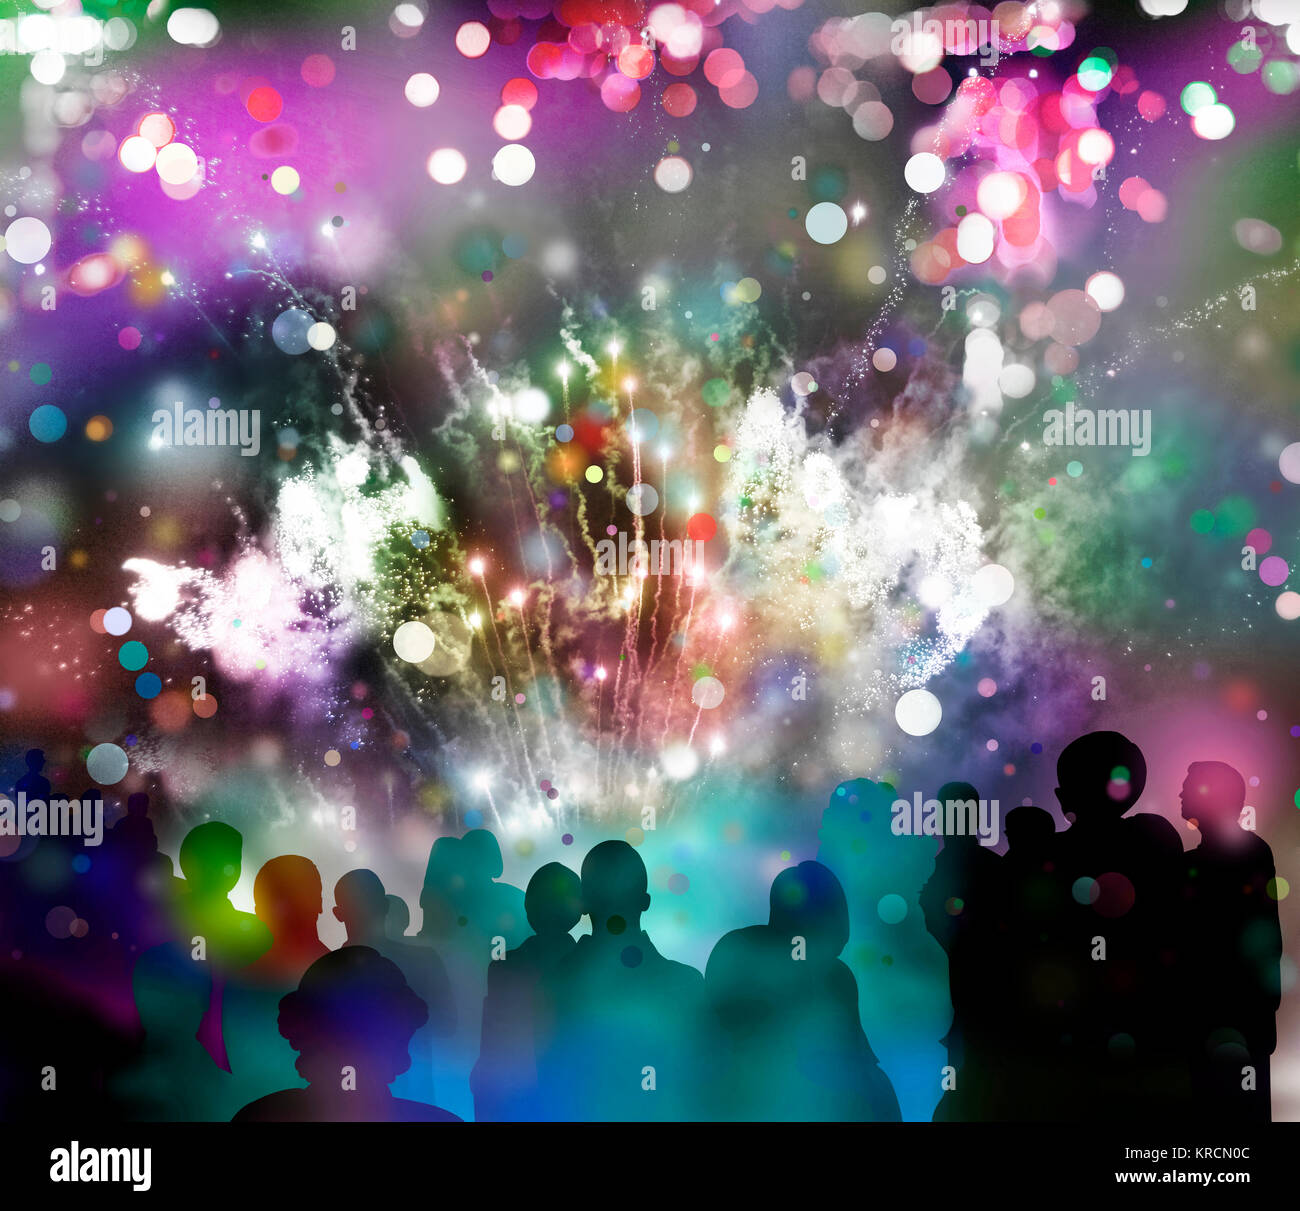 nächtliches Feuerwerk mit bunten Licht- und Glitzermustern, bunter Konfettiregen und Zuschauer-Silhouetten, Mixed Media Stock Photo